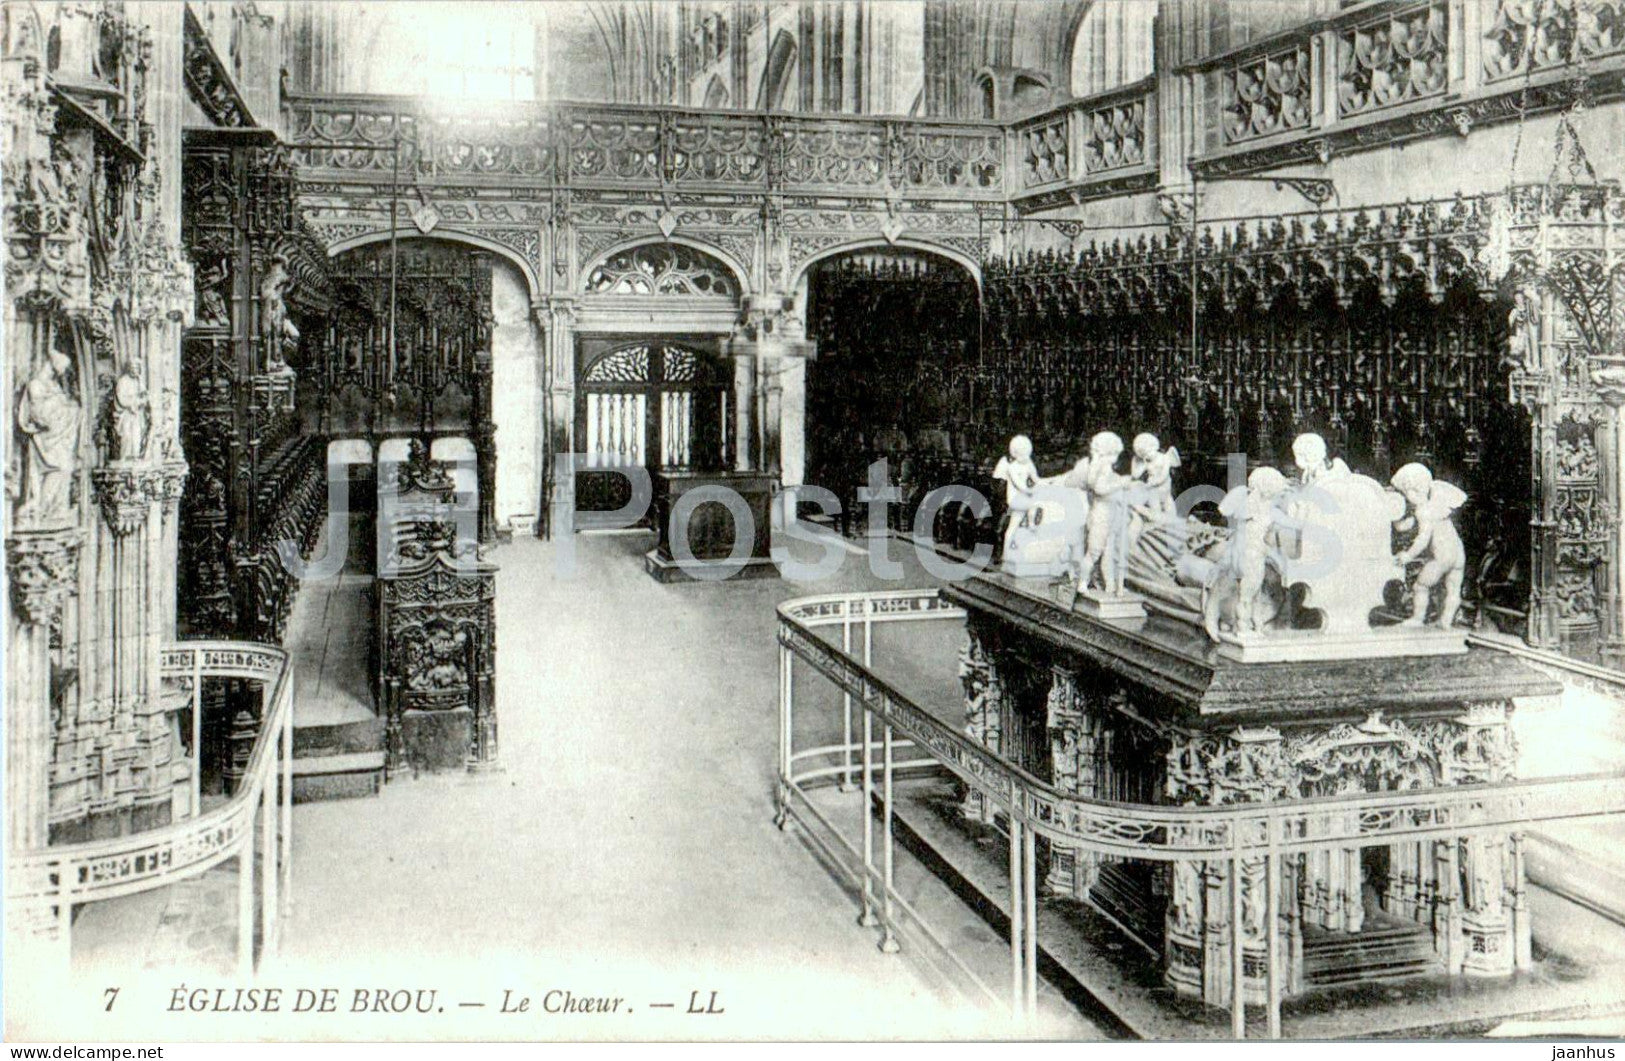 Eglise de Brou - Le Choeur - church - 7 - old postcard - France - unused - JH Postcards